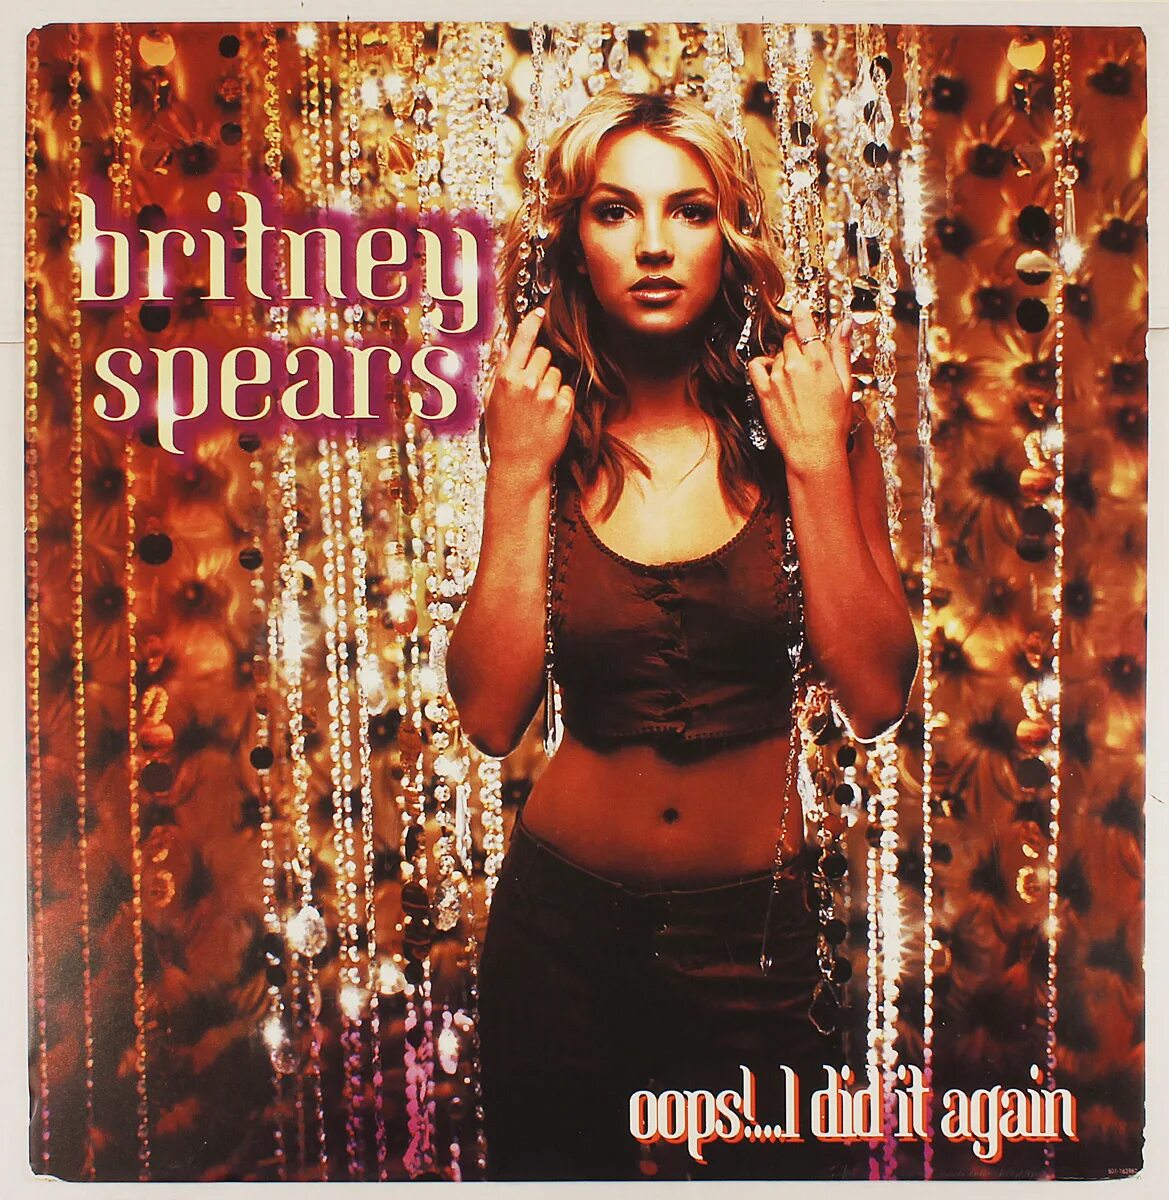 Бритни Спирс i did it again. Britney Spears oops!... I did it again (2000) обложка. Oops!… I did it again Бритни Спирс-пластинка. Pop! Albums Britney Spears - oops! I did it again.